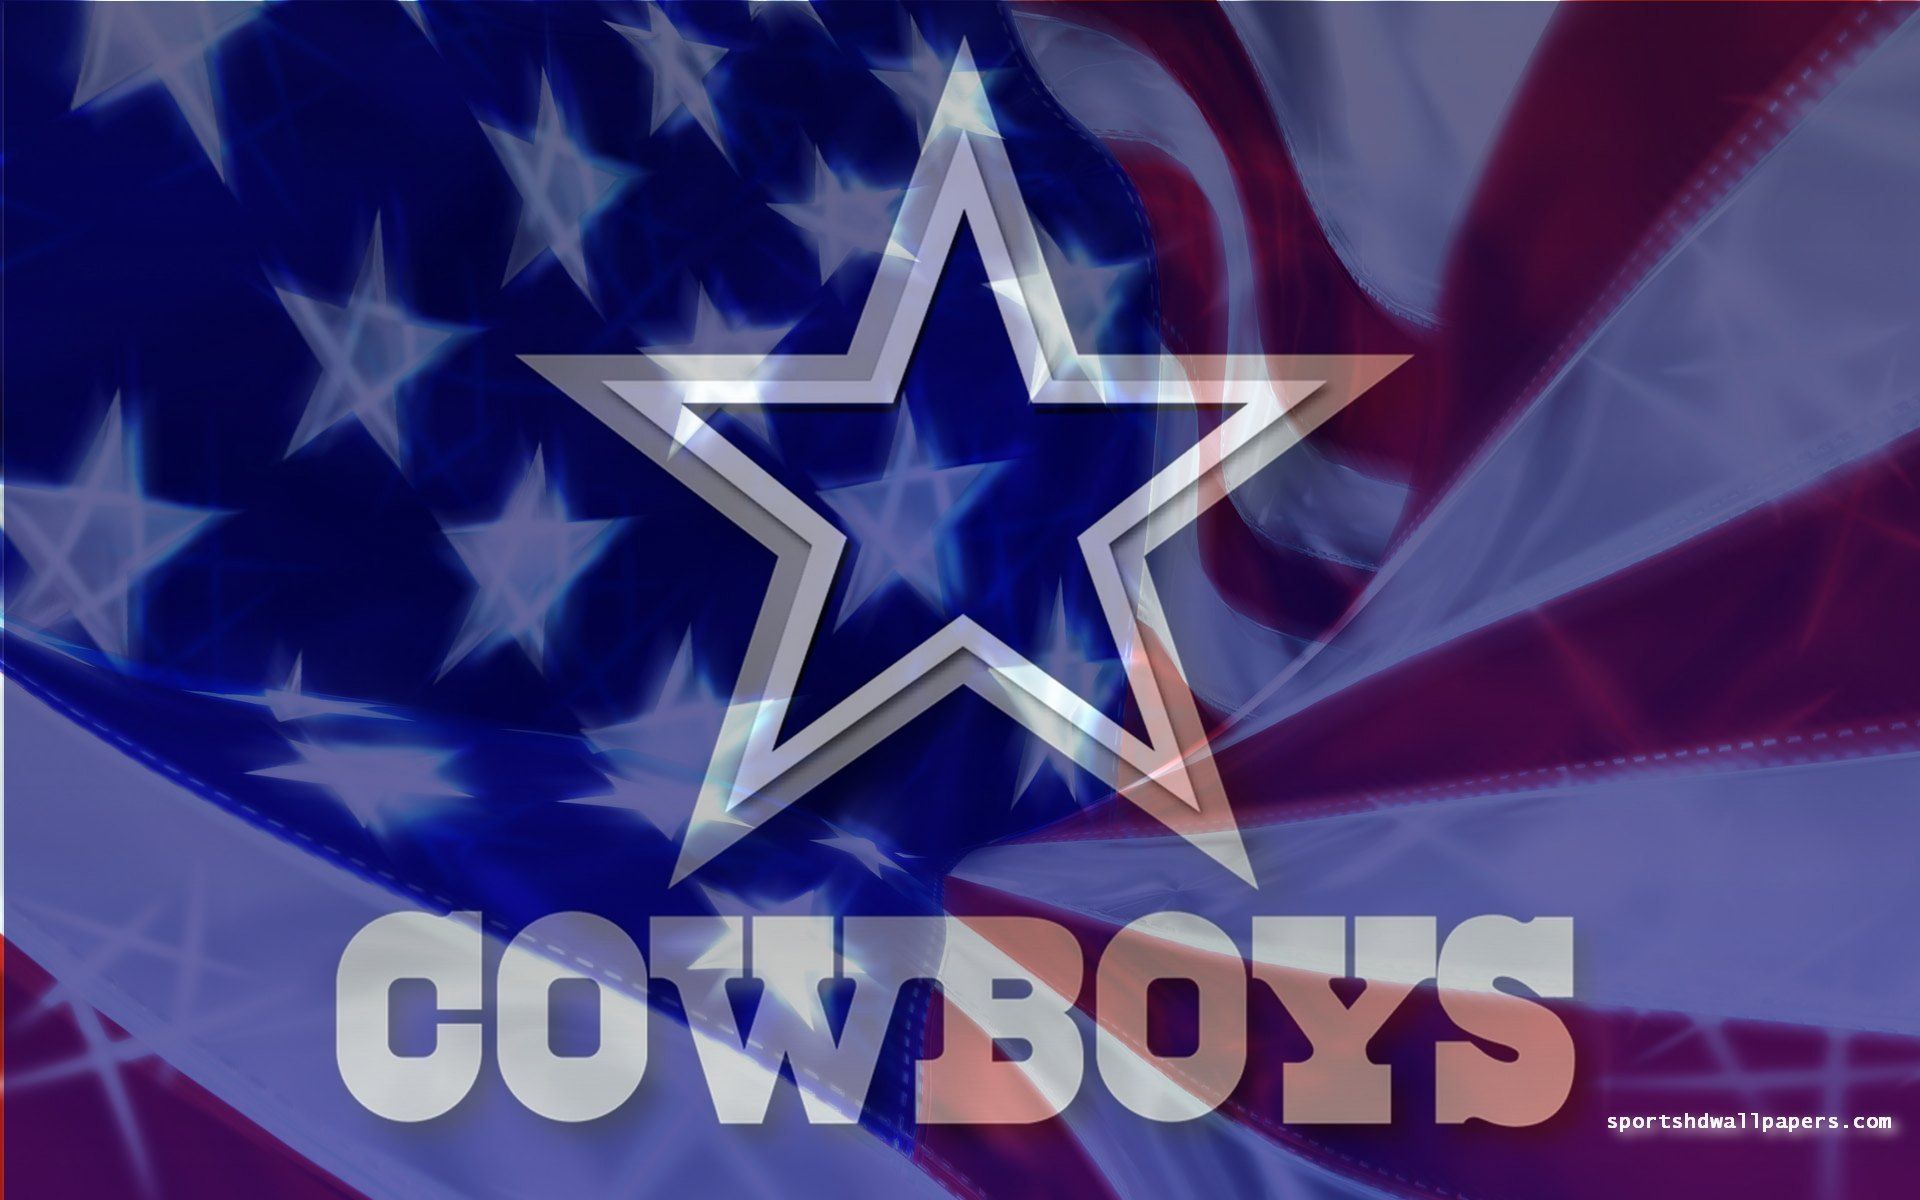 Dallas cowboy wallpaper